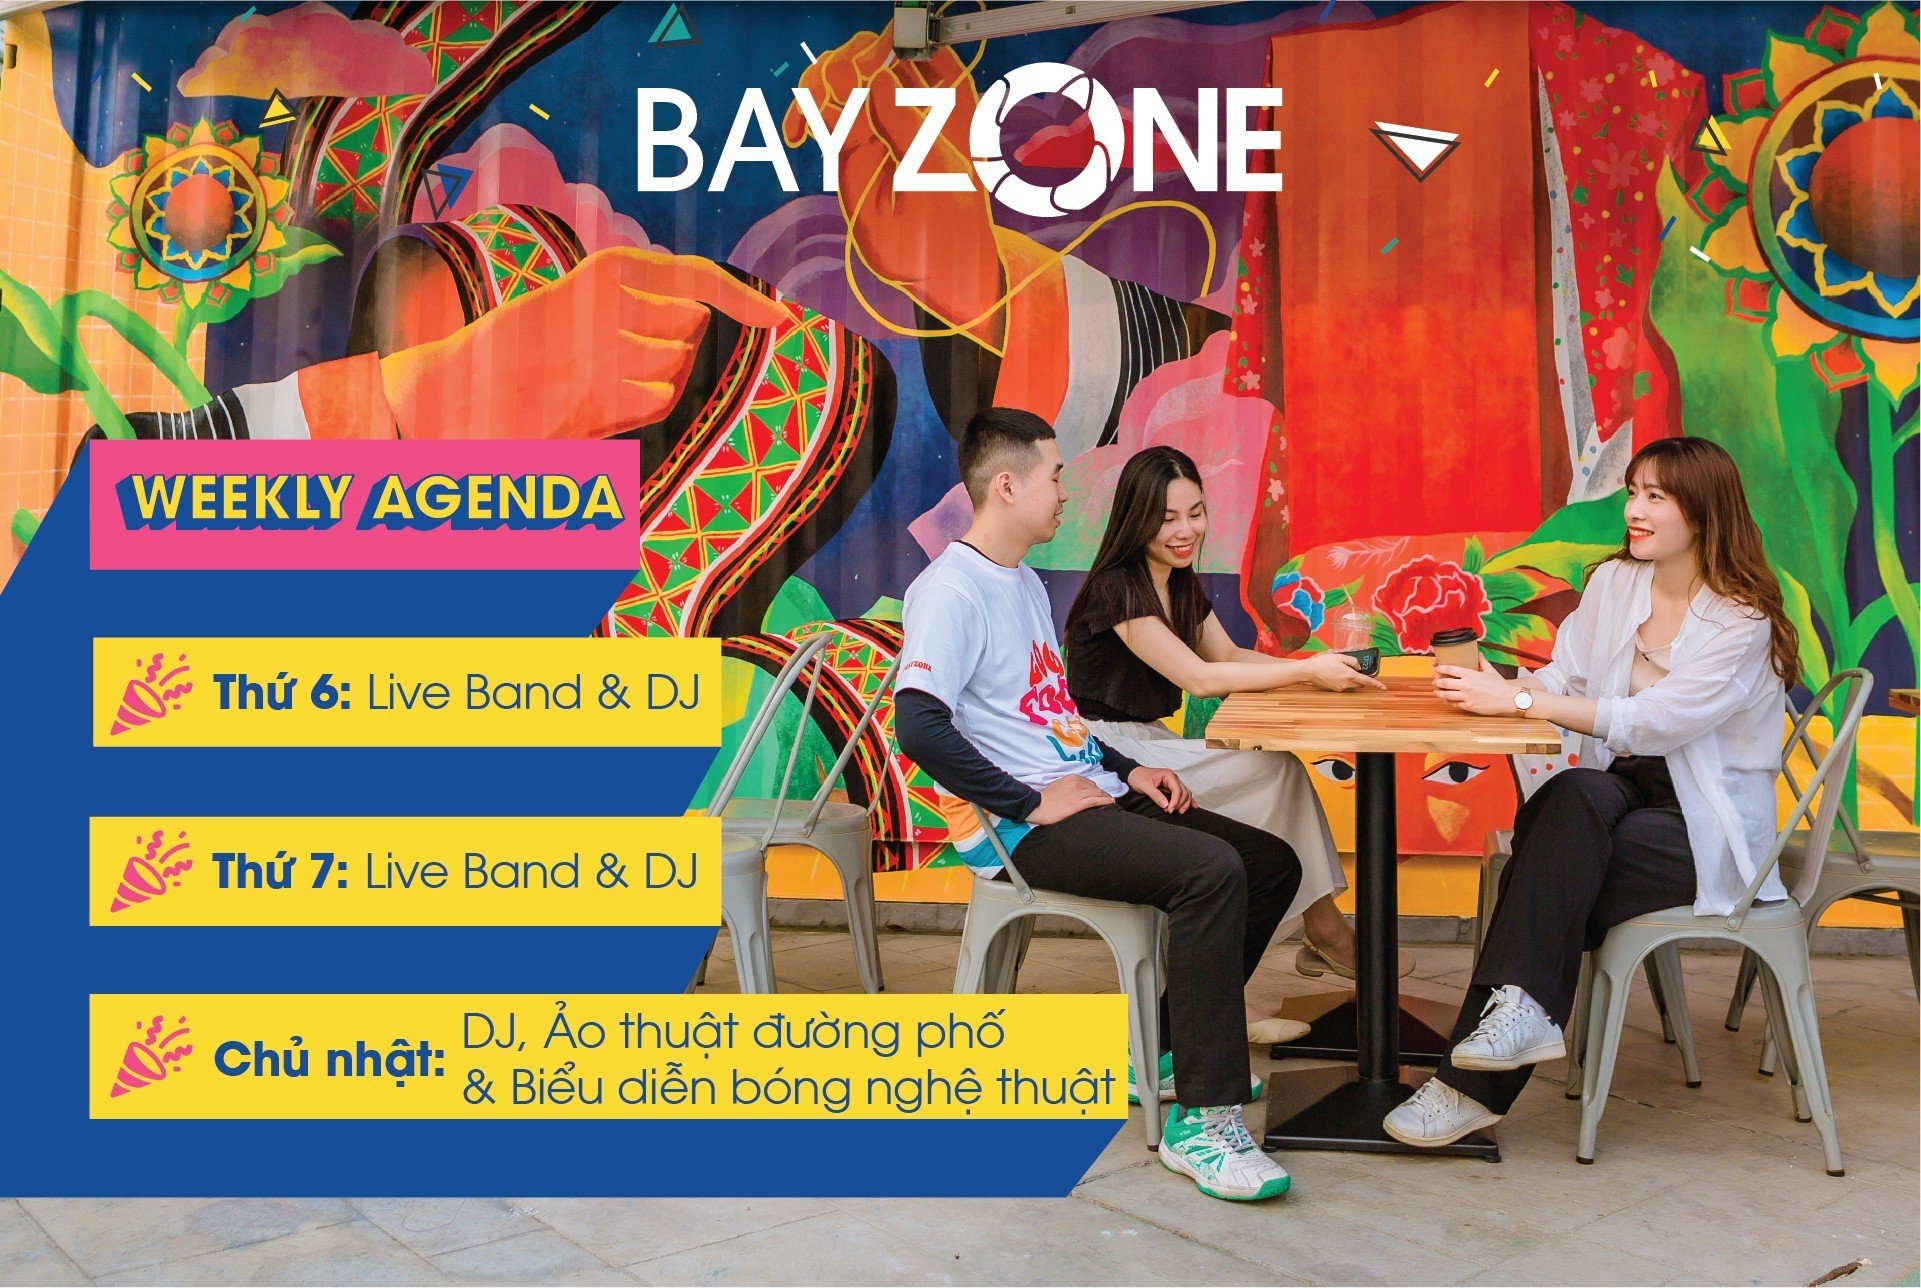 Bay Zone Hạ Long, Tổ hợp ẩm thực - giải trí - nghệ thuật đầu tiên tại Hạ Long, bến tàu Tuần Châu, Ẩm thực Bay Zone, Thông tin về BAY ZONE, Review Bay Zone Ha Long, Marina Hạ Long, Phố đi bộ Bay Zone